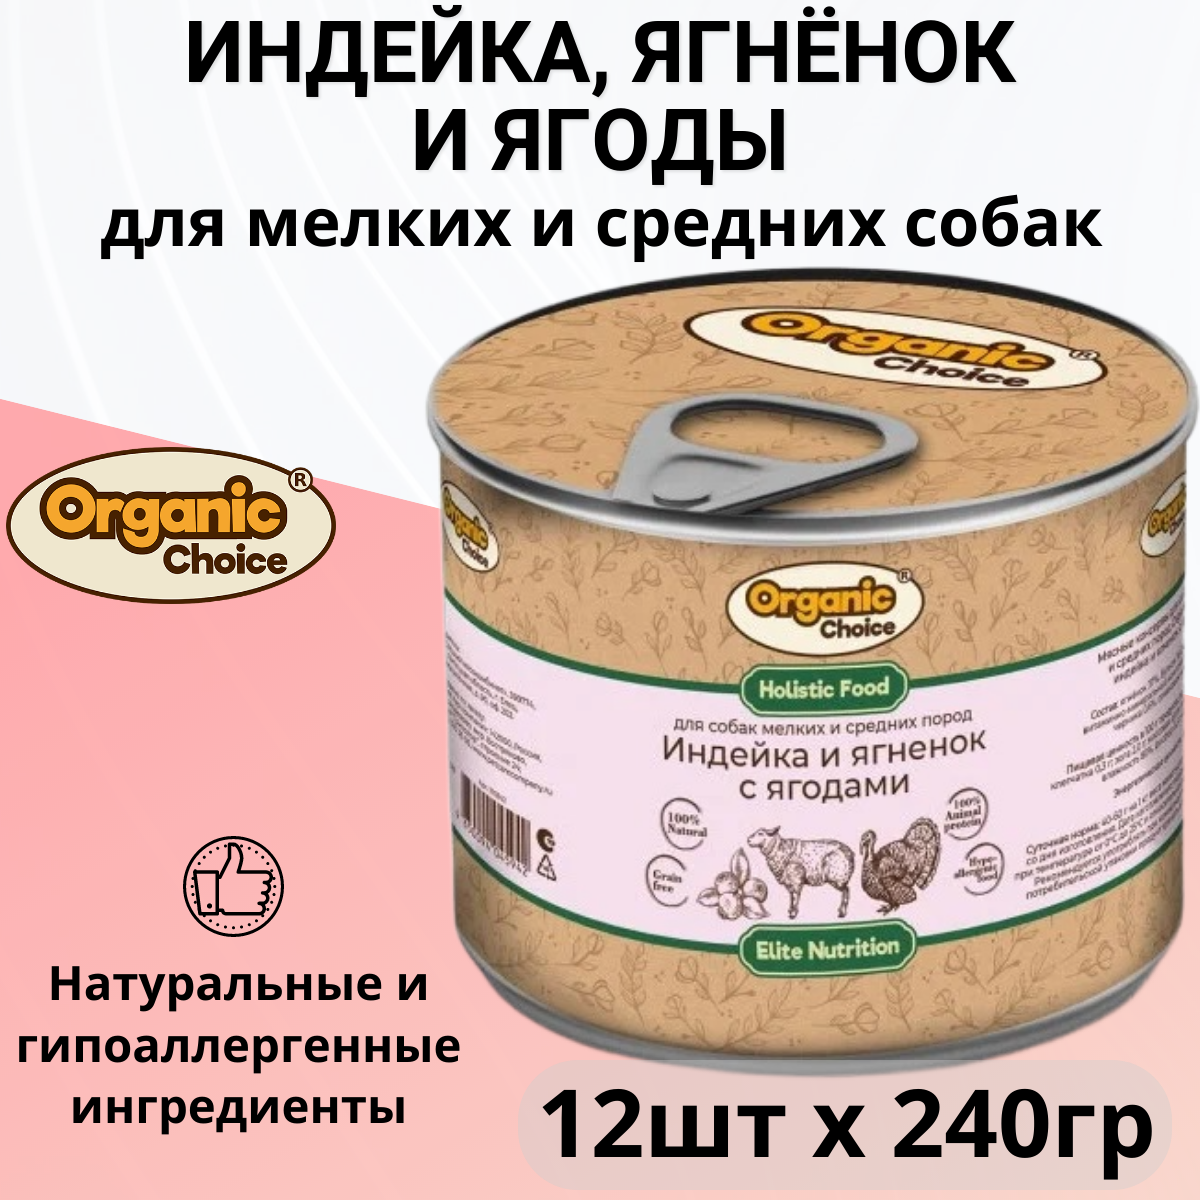 Organic Сhoice влажный корм для собак малых и средних пород, индейка и ягненок с ягодами (12шт в уп) 240 гр